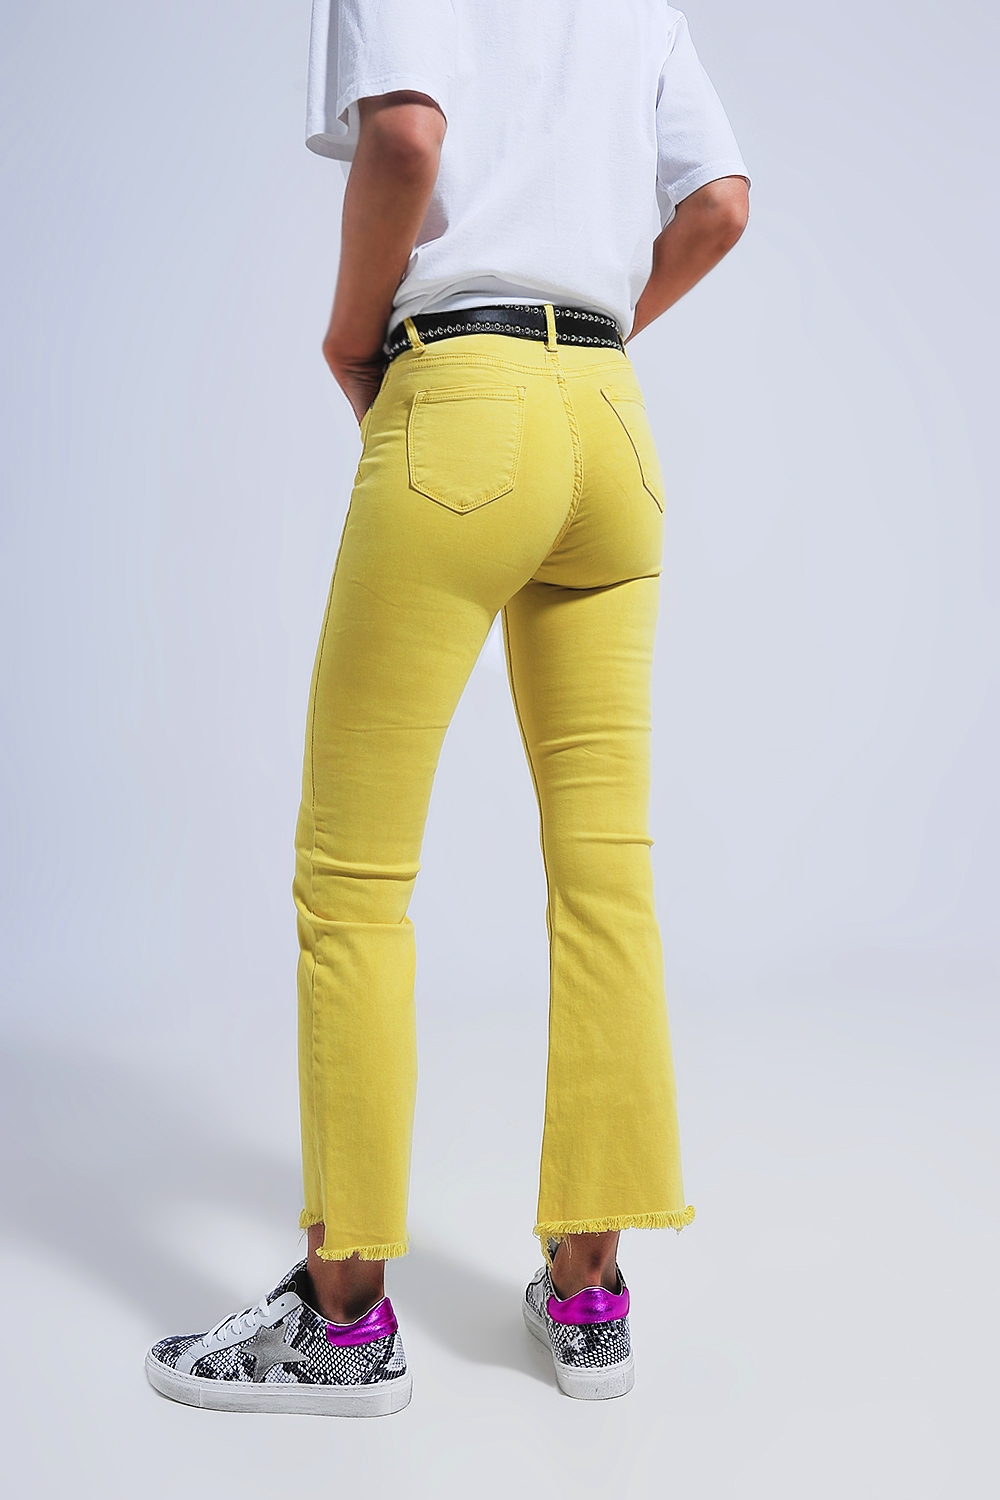 Pantalones rectos en amarillo con tobillos anchos